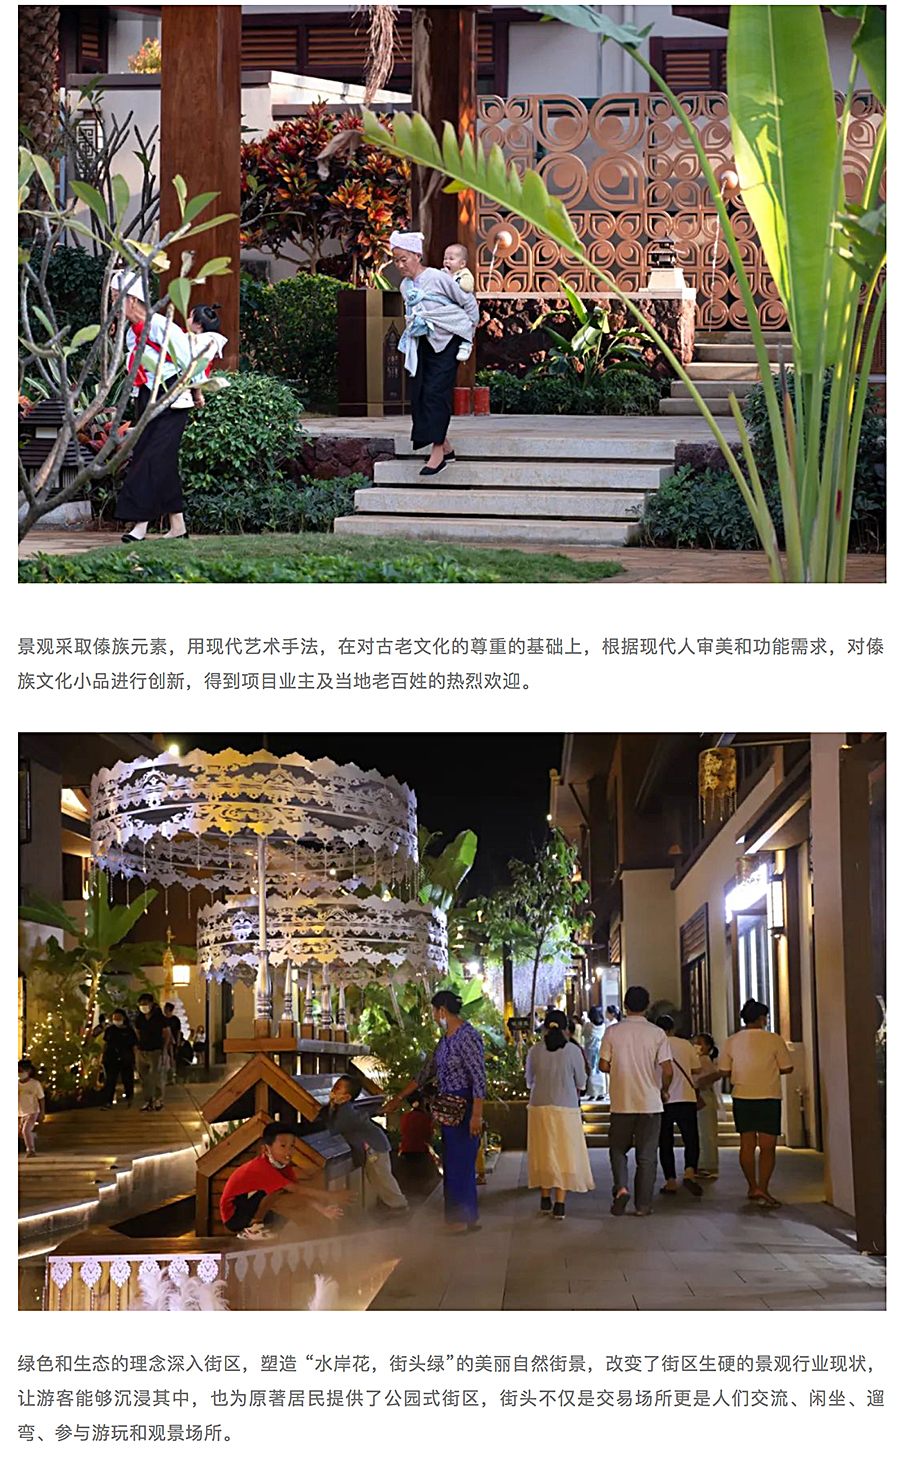 芒市傣族古镇一期景观设计工程_0002_图层-3.jpg